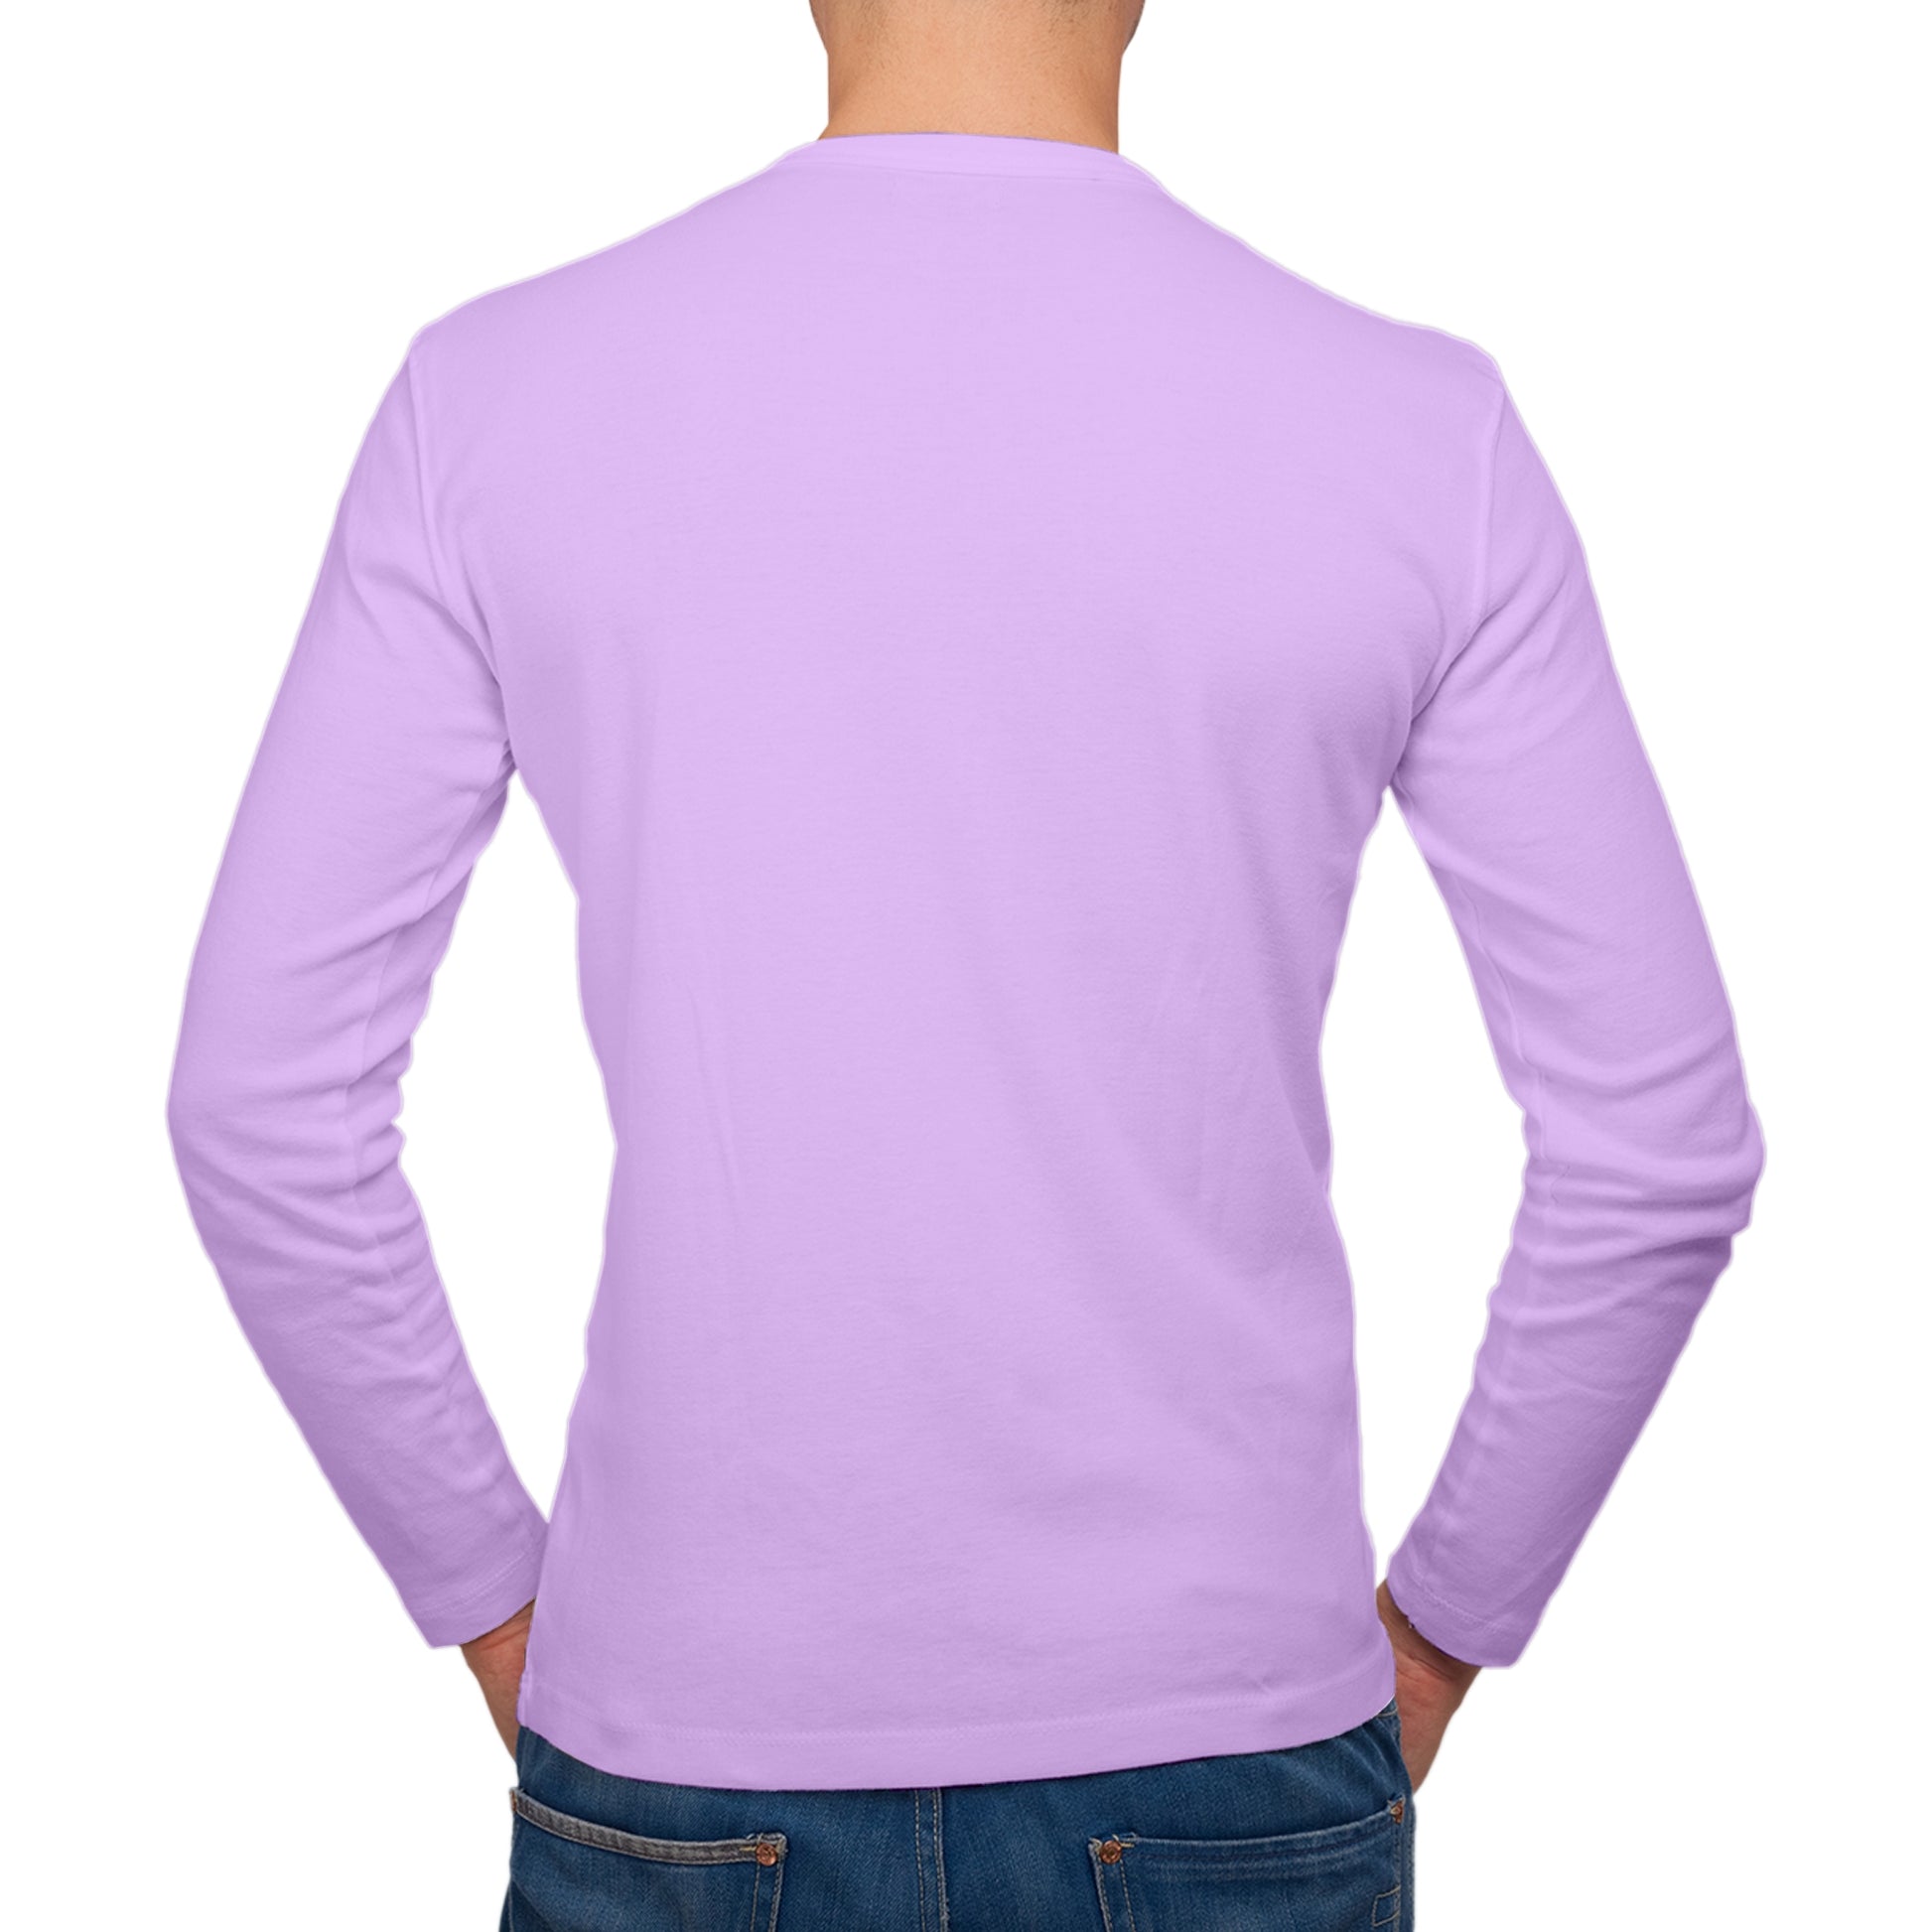 Full Sleeves Light Purple T-Shirt For Men - FlyingCart.pk